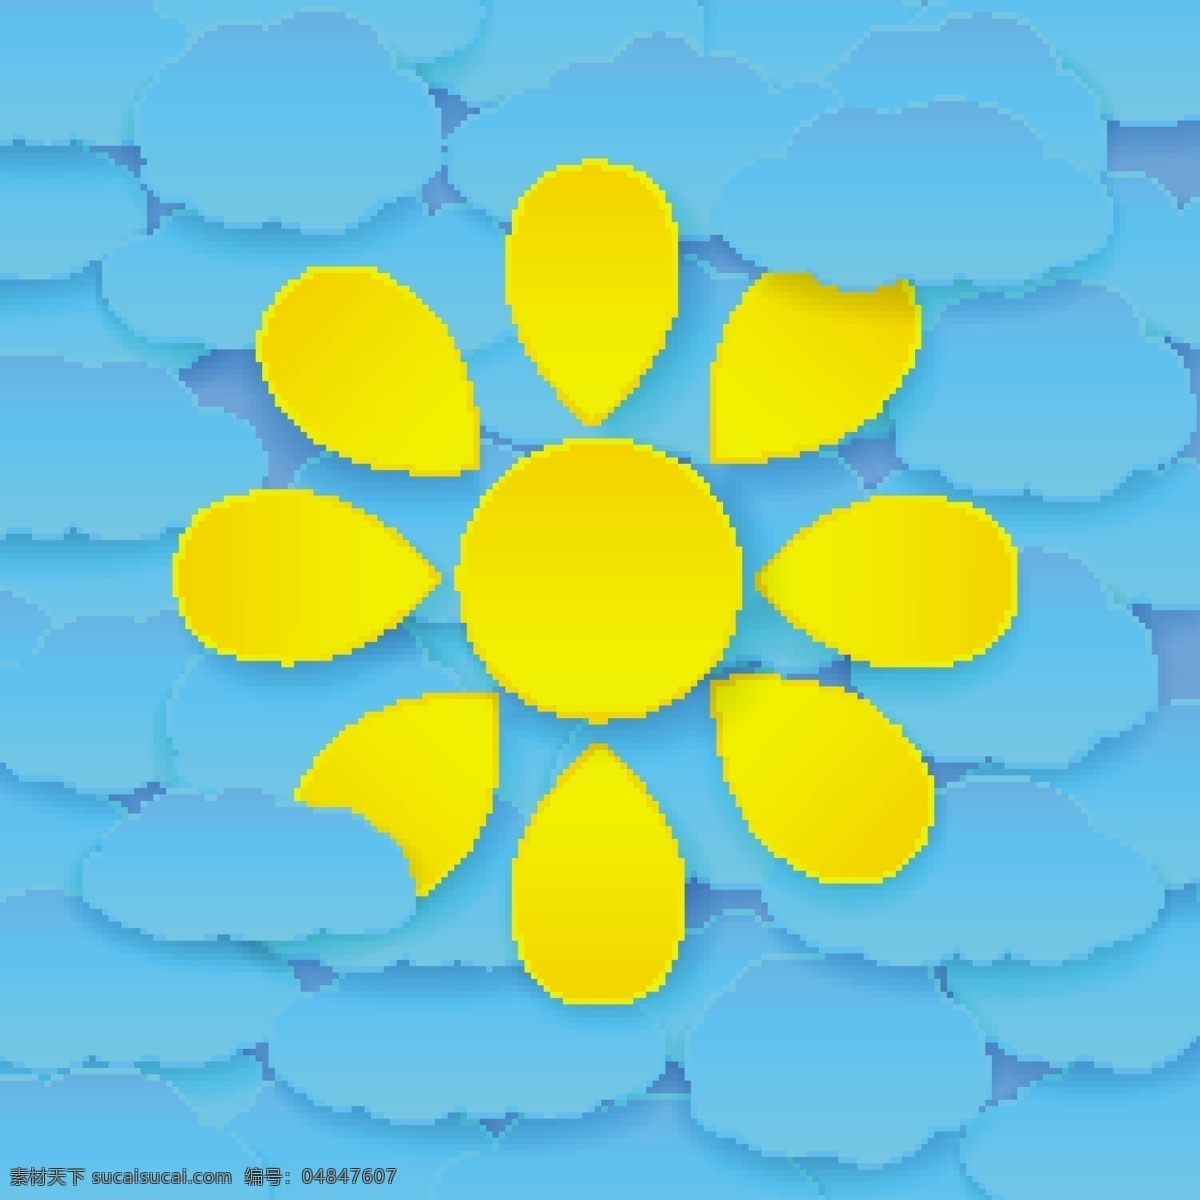 太阳 水珠 夏日 度假 沙滩 椰树 矢量 云朵 创意 涂鸦 英文 小清新 卡通 填充 插画 背景 海报 广告 包装 印刷